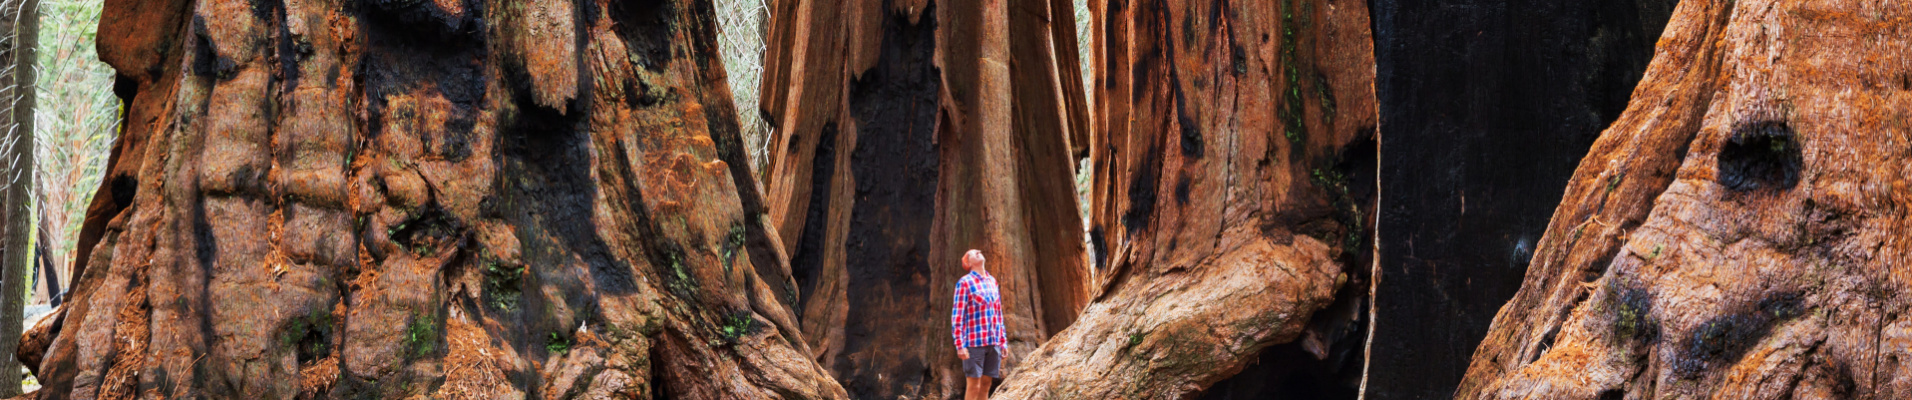 sequoia-etats-unis